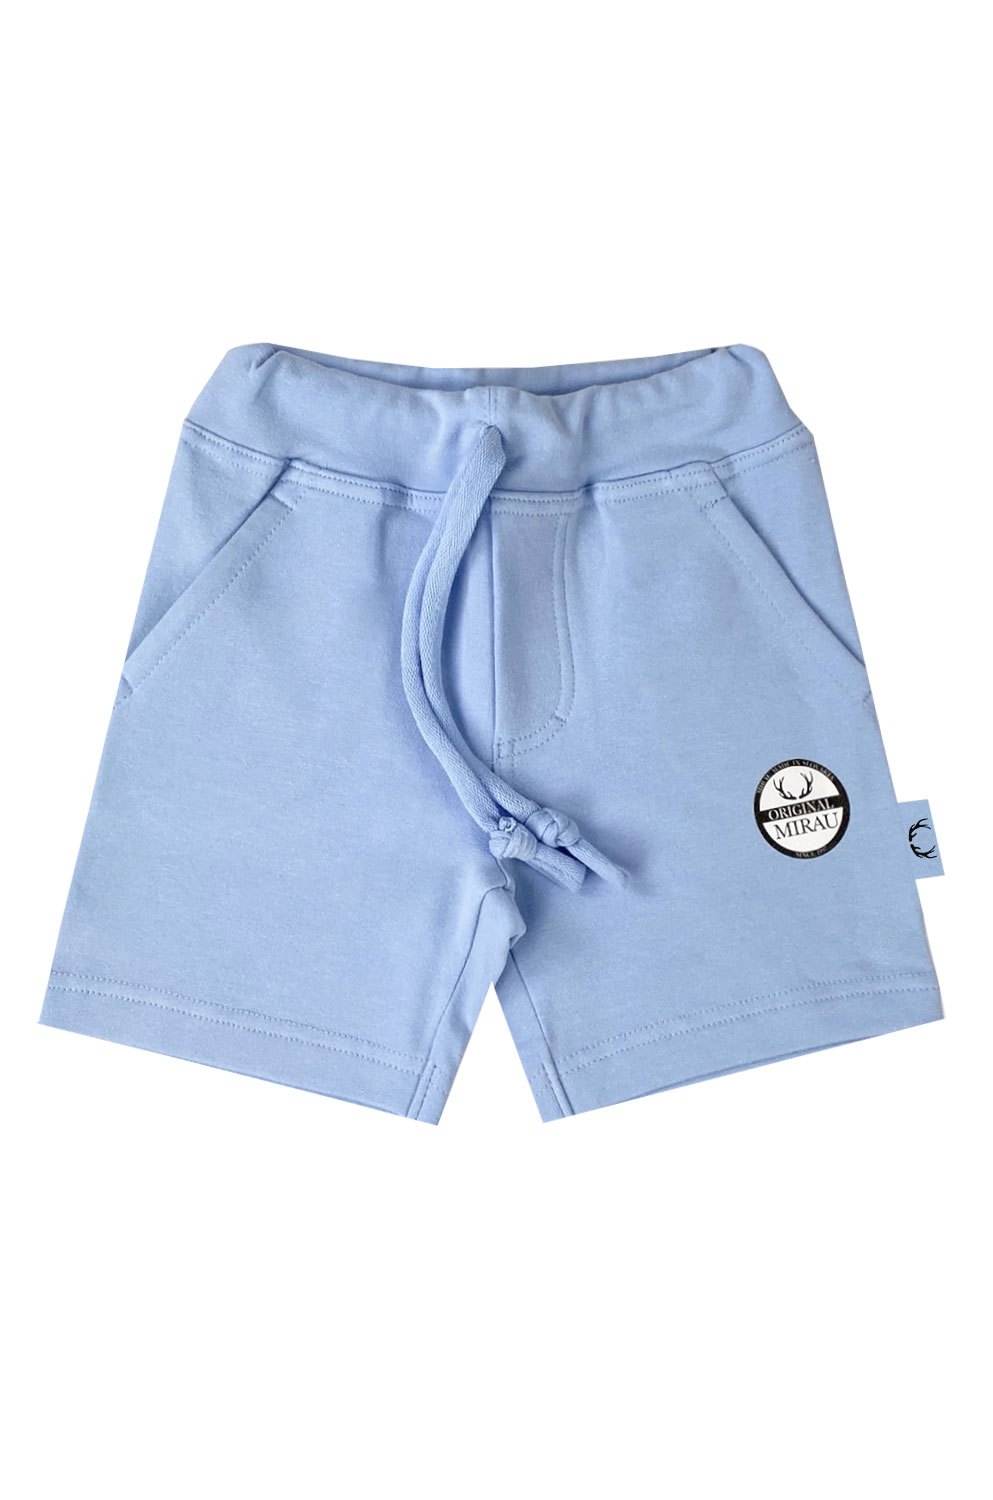 Chlapecké krátké kalhoty - Originál